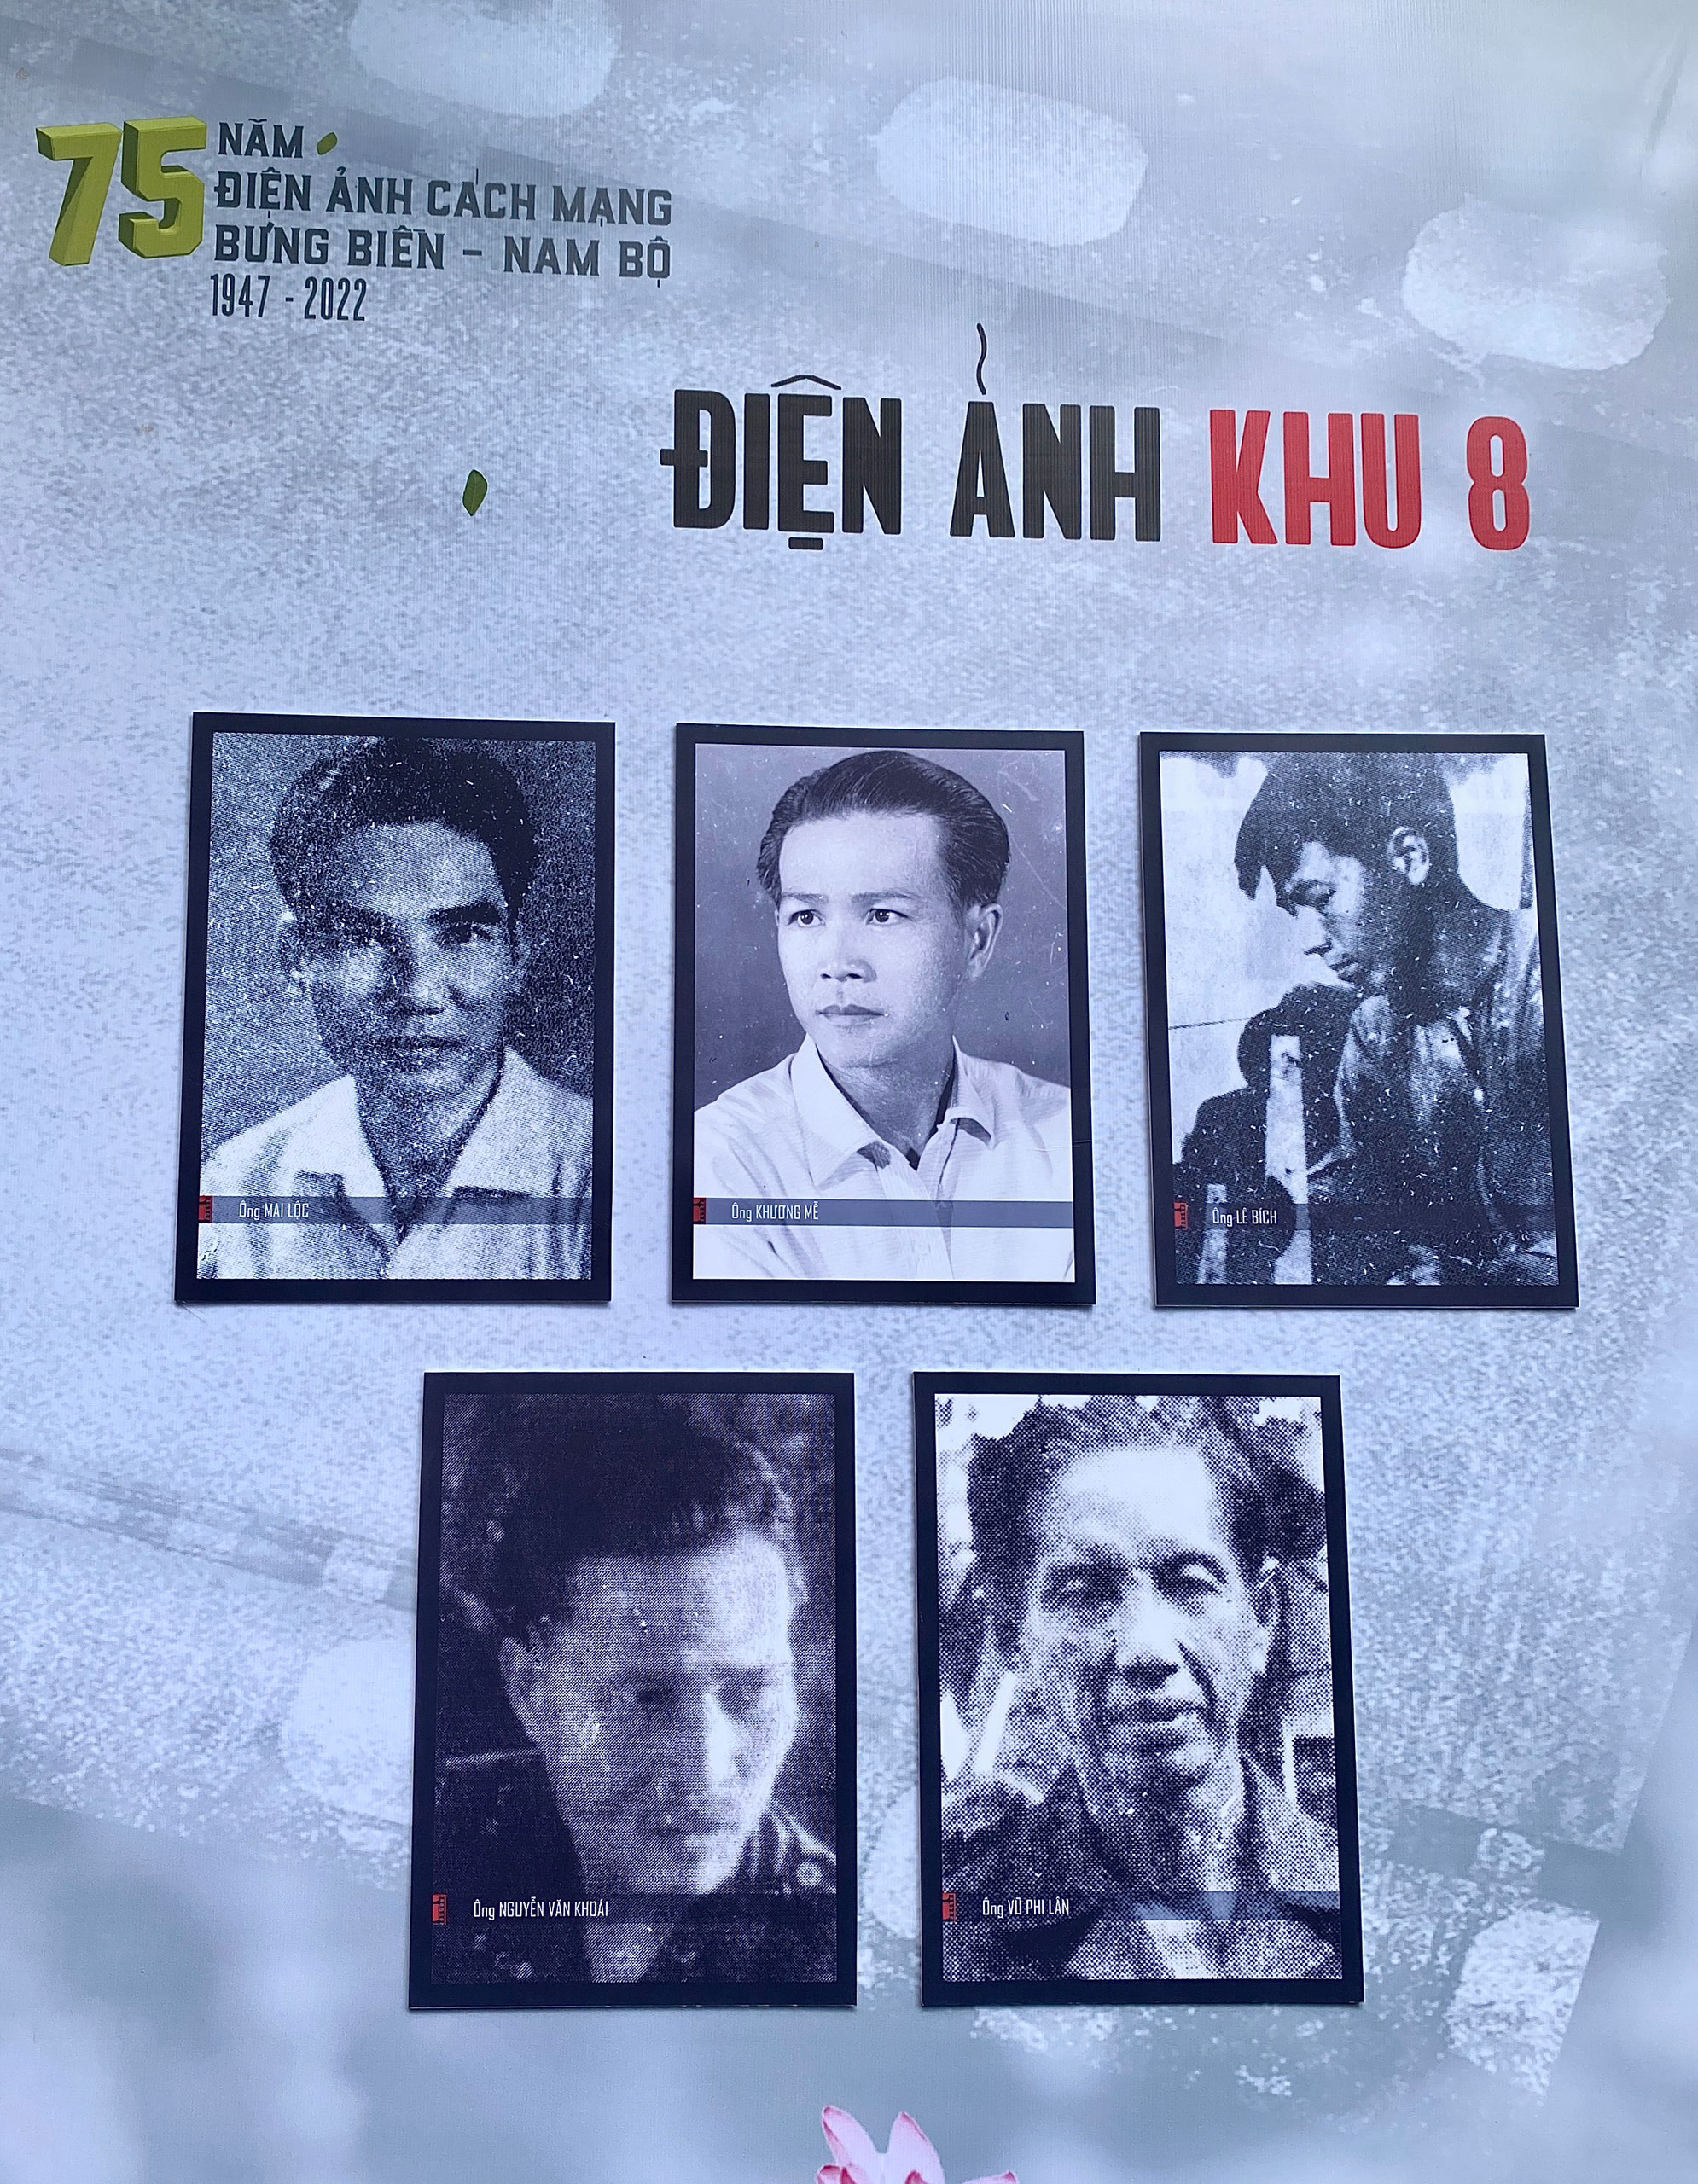 Điện ảnh cách mạng Bưng Biển - Nam Bộ đã làm nên lịch sử trong lĩnh vực điện ảnh Việt Nam. Bộ ảnh liên quan đến điện ảnh này sẽ đưa bạn vào những thước phim đầy cảm hứng và kỳ lạ. Hãy cùng khám phá sự thay đổi, phát triển của điện ảnh Việt Nam qua những hình ảnh này!